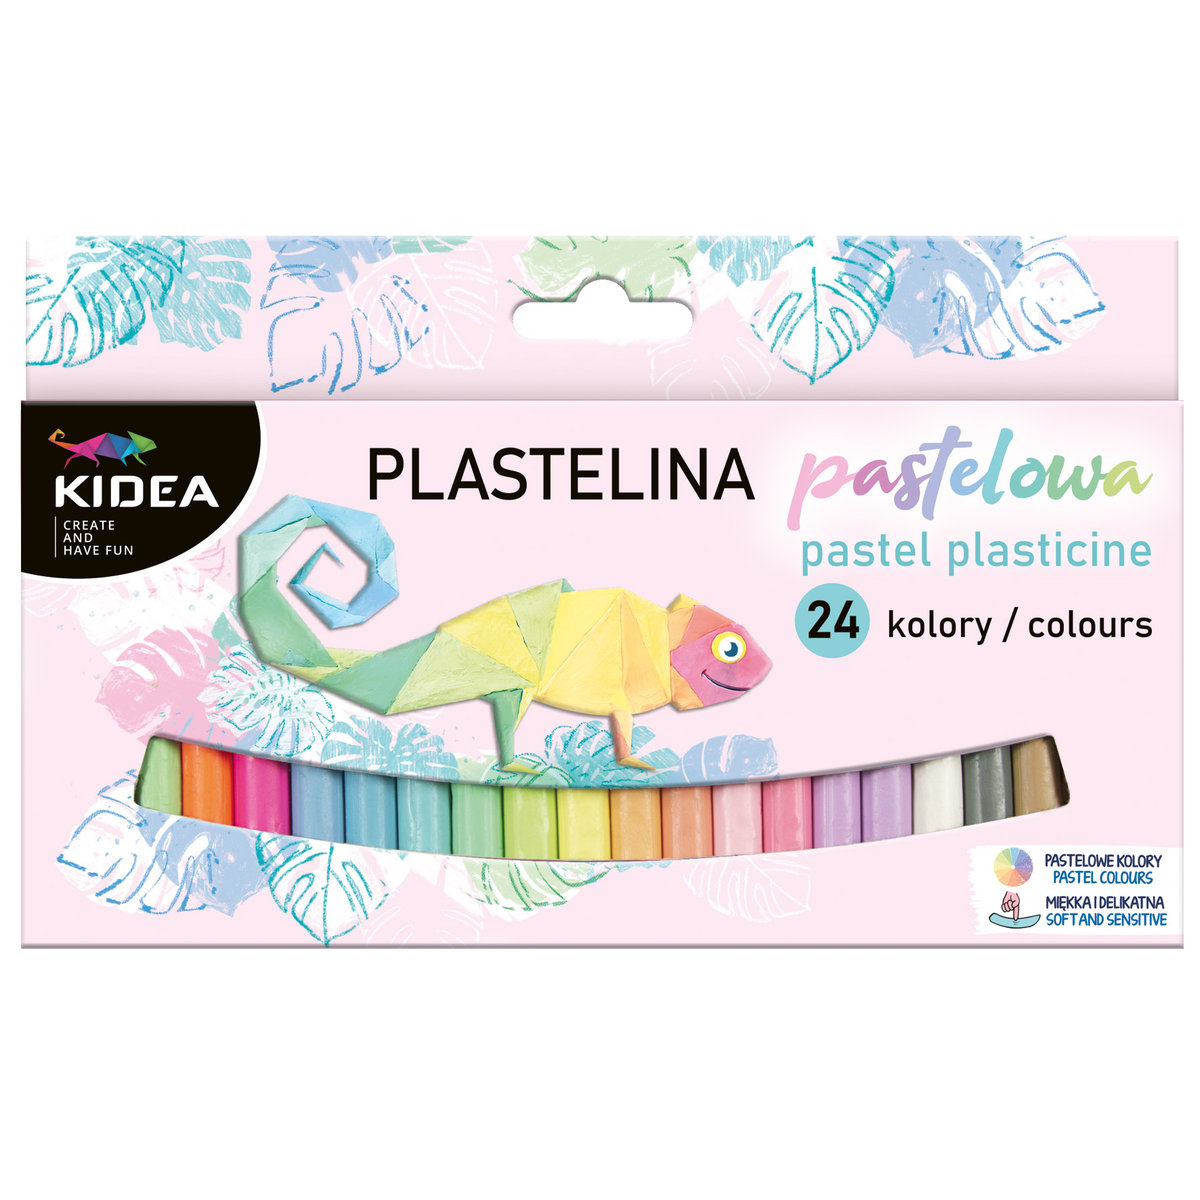 Фото - Творчість і рукоділля Kidea, Plastelina pastelowa, 24 kolory